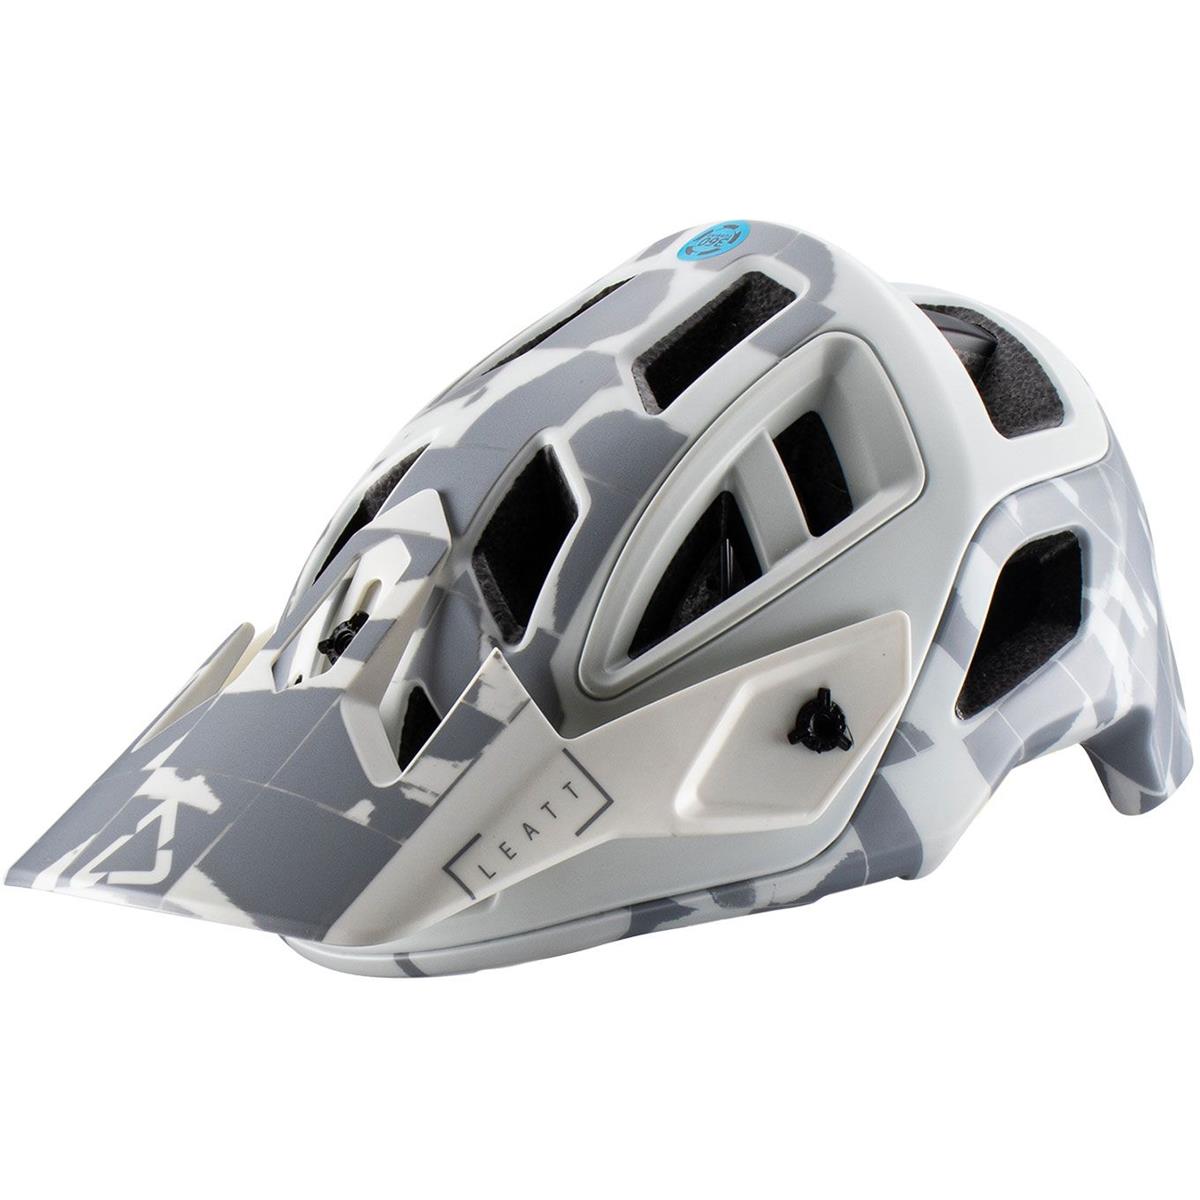 Leatt Enduro MTB Helmet 3.0 All Mountain Steel